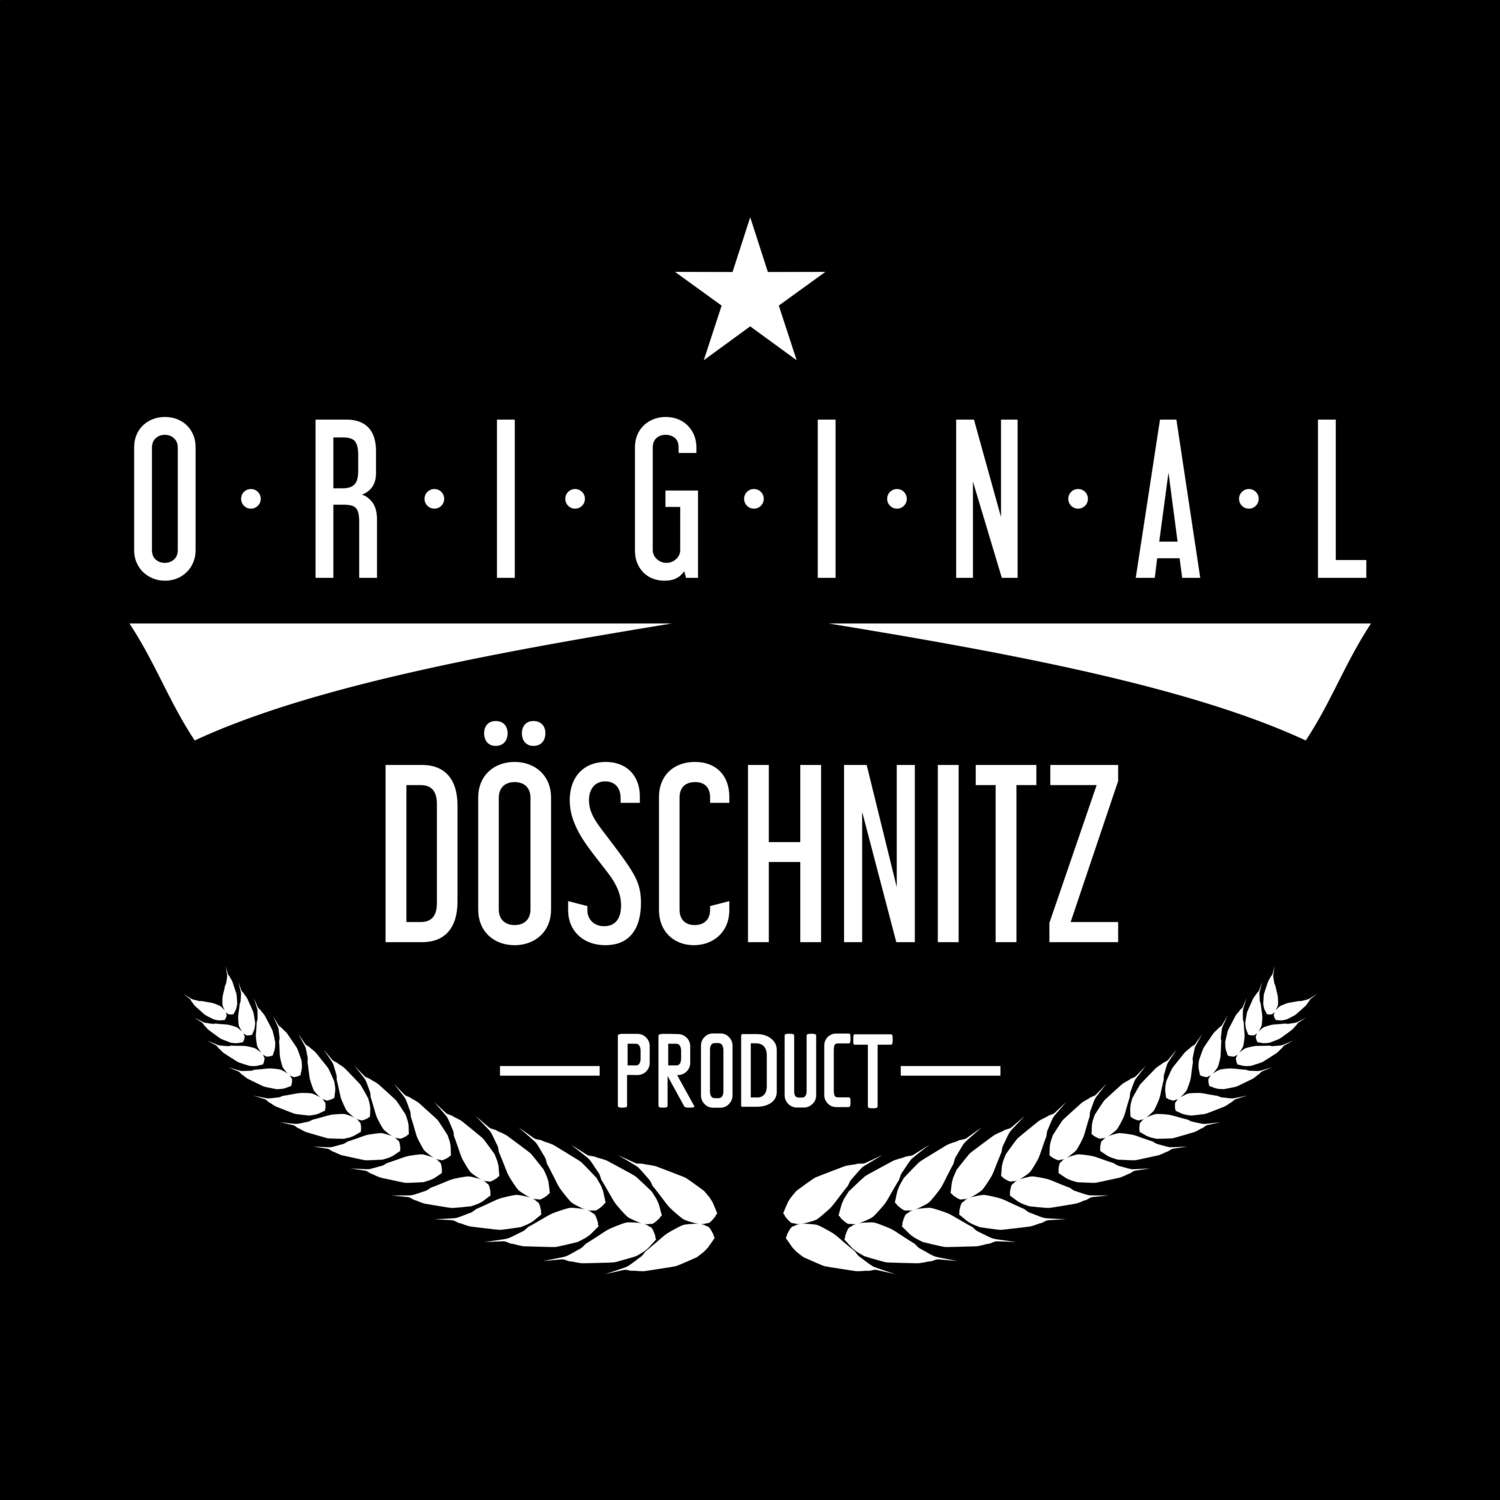 Döschnitz T-Shirt »Original Product«